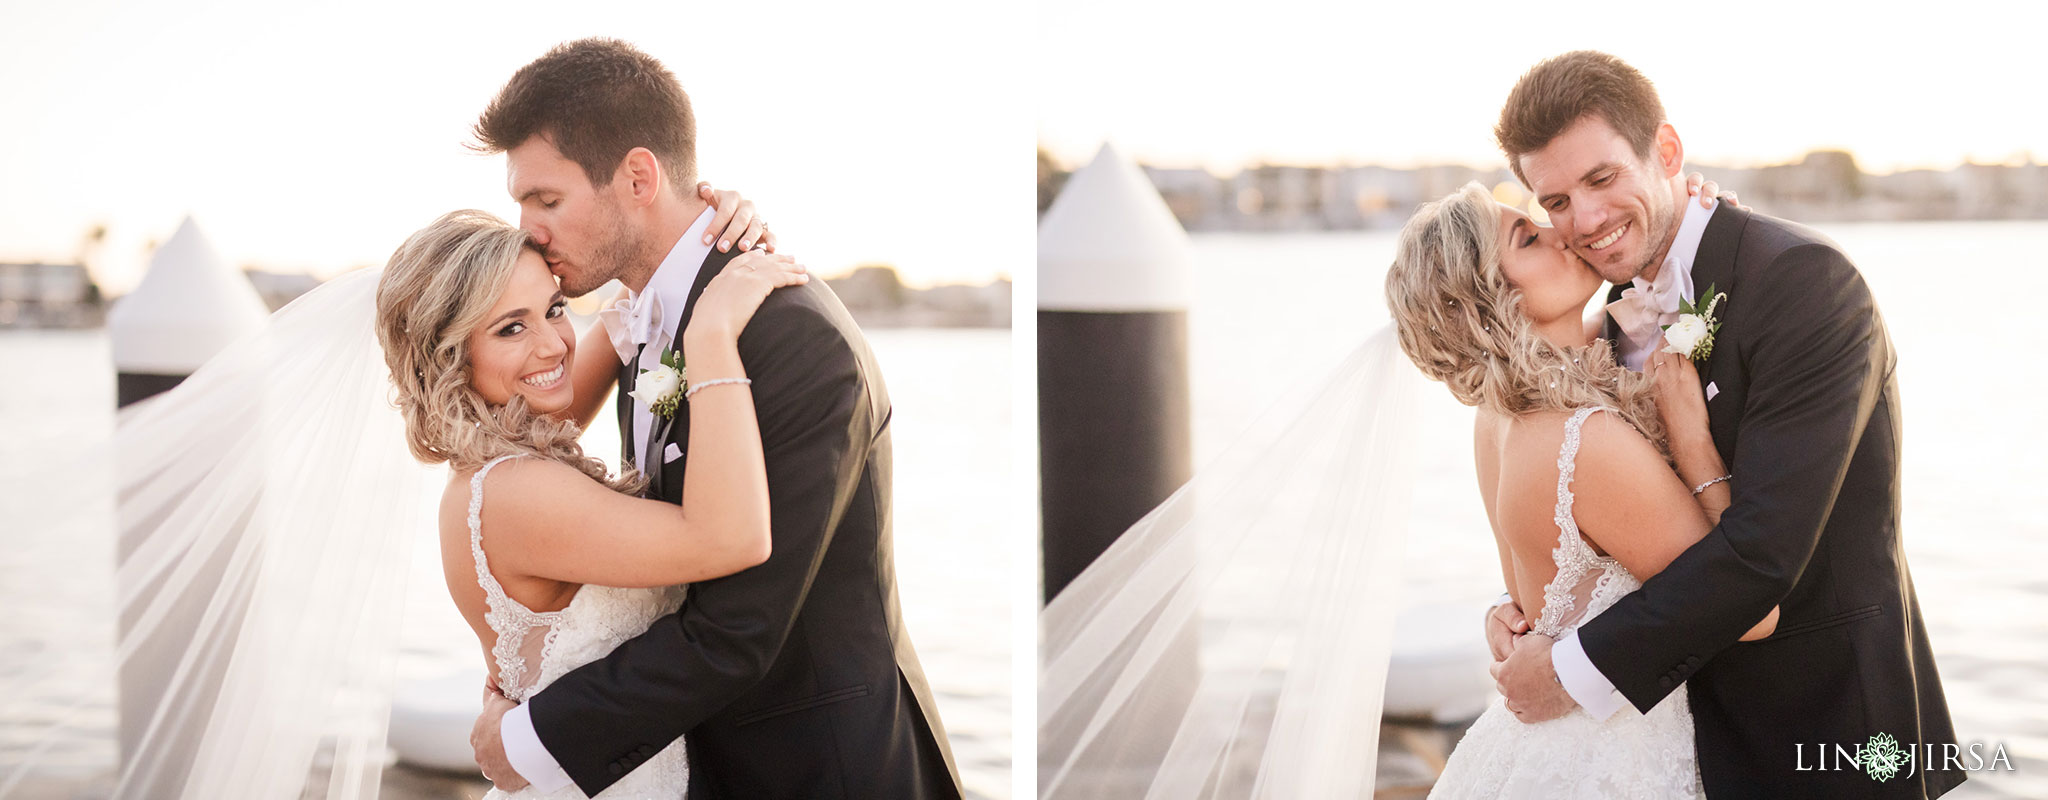 27 balboa bay wedding newport photography